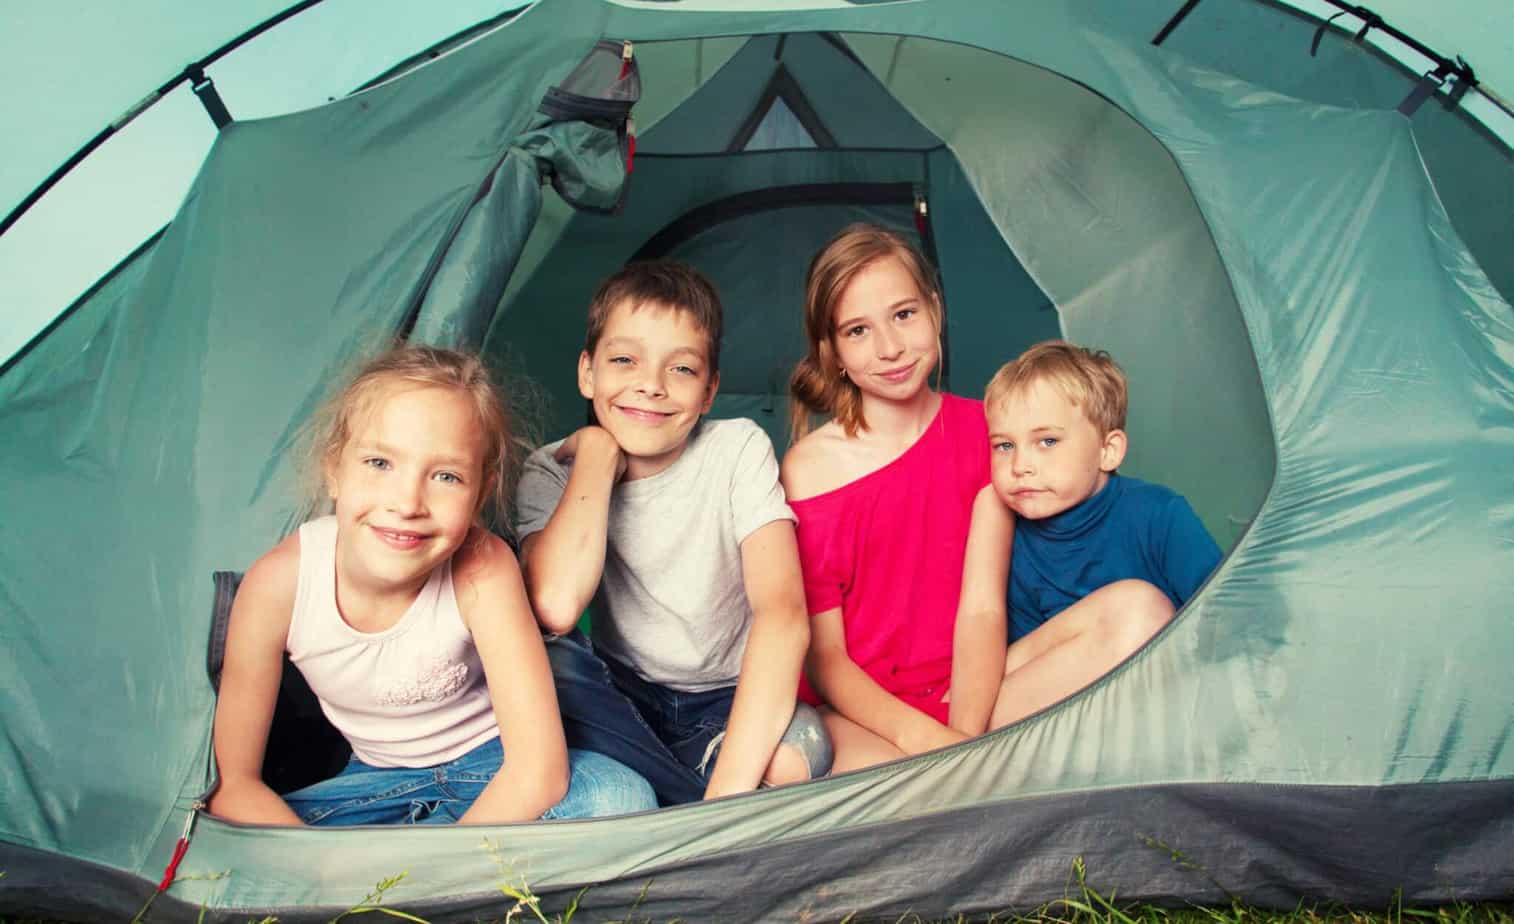 Camping together. Лагерь childcamp. Палатка фото для детей. Кемпинг с детьми. Поход кемпинг дети.